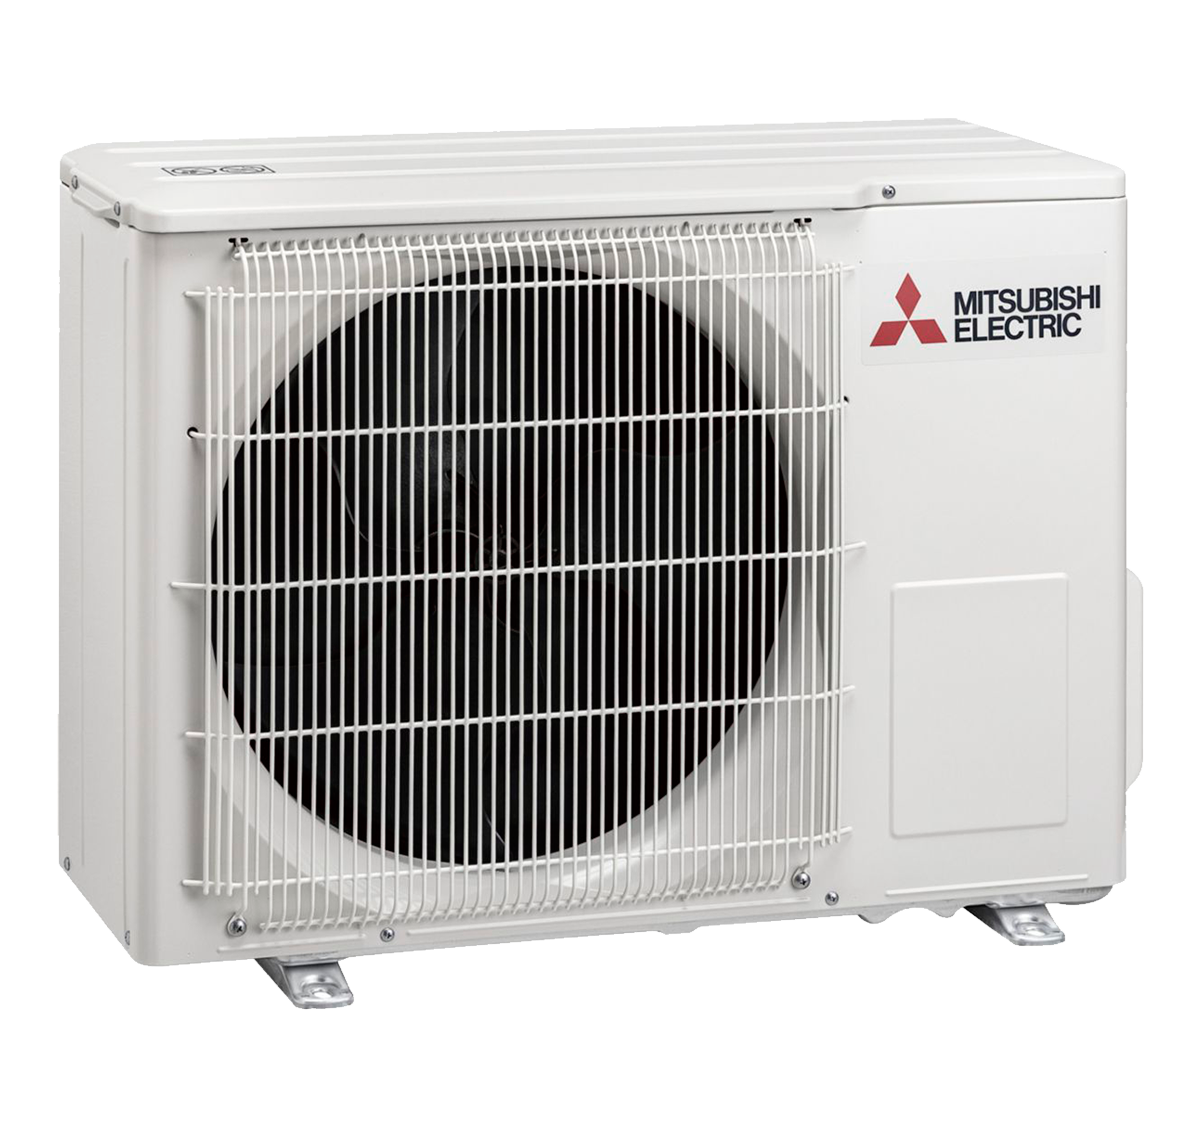 aire acondicionado unidad exterior mitsubishi electric inverter muz hr25vf serie msz hr modelo msz hr25vf precio incluido en la instalacion caseragua